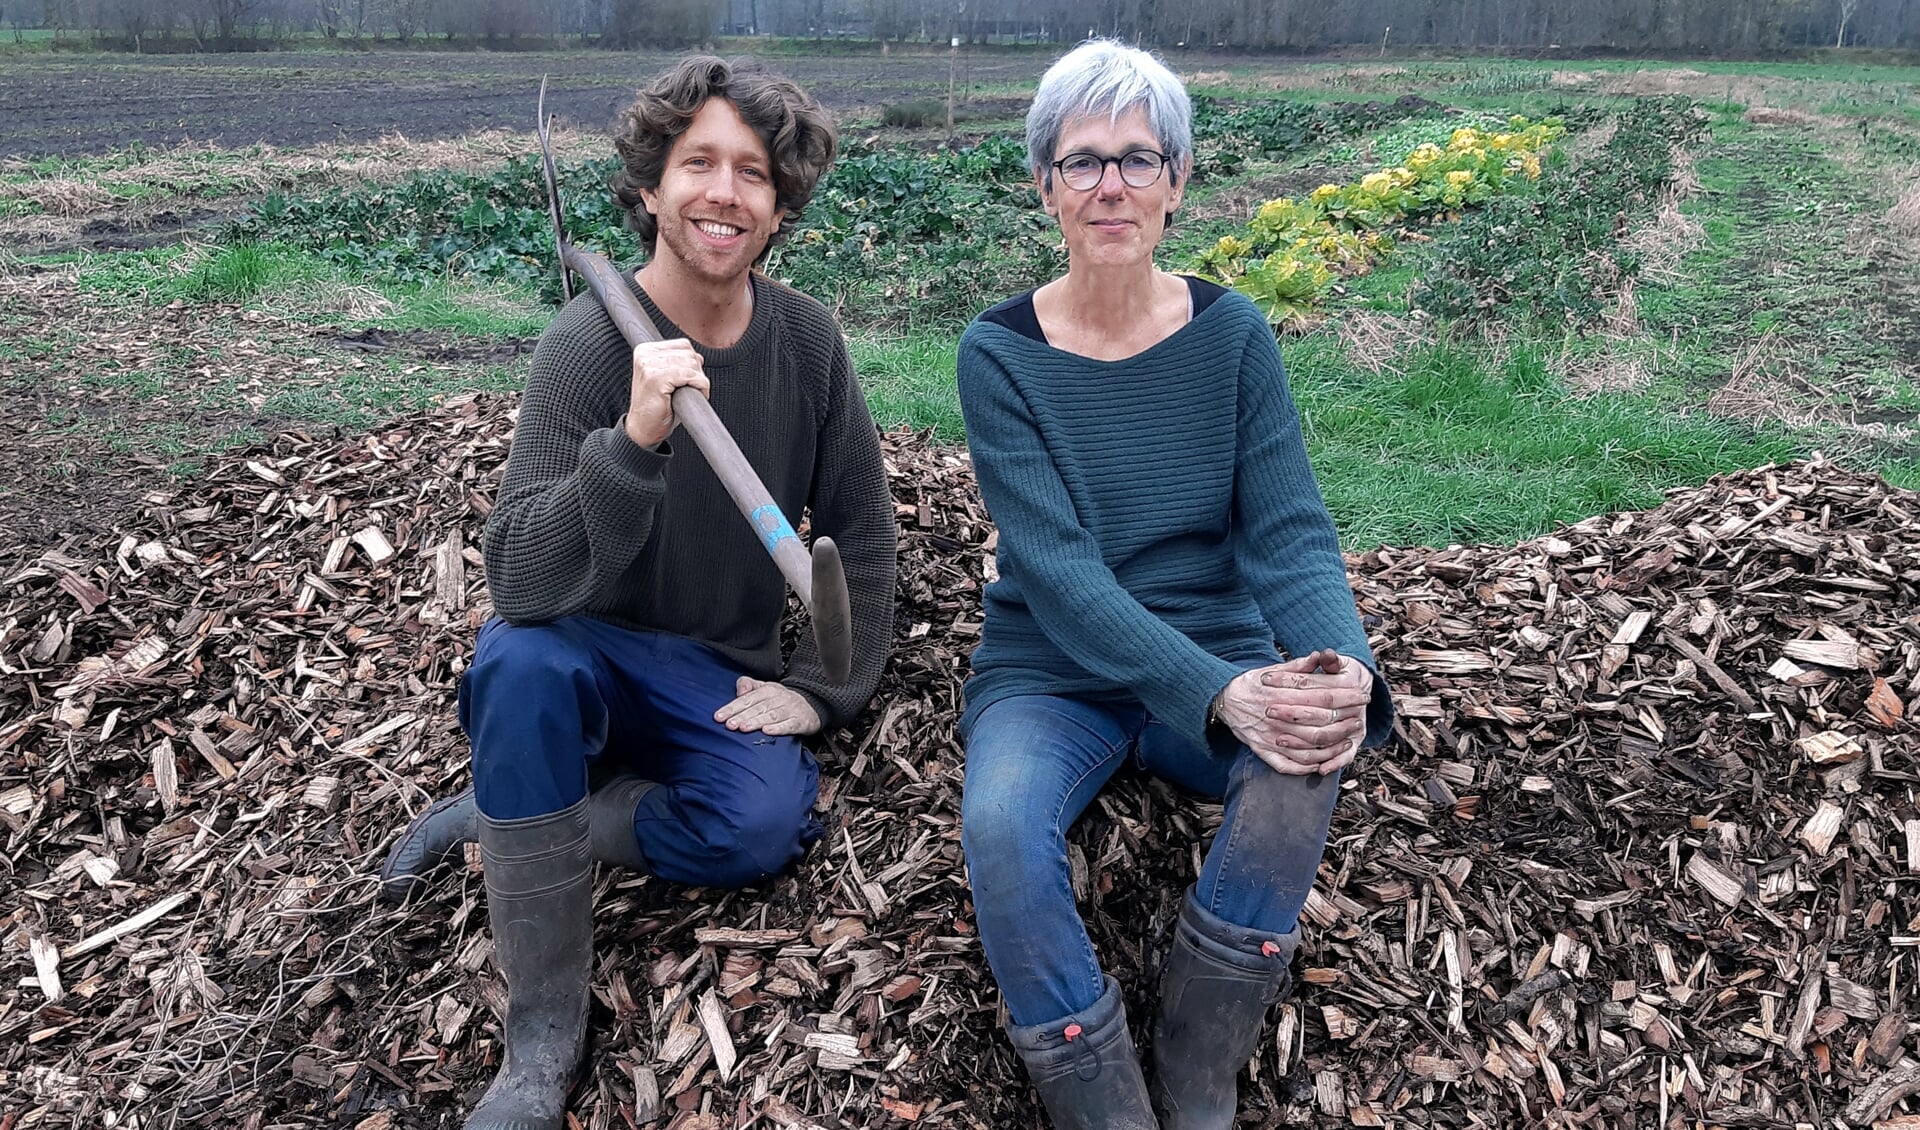 Quinten en Dita zoeken nog vrijwilligers om wekelijks samen buiten op het land biologisch en verantwoord te tuinen.